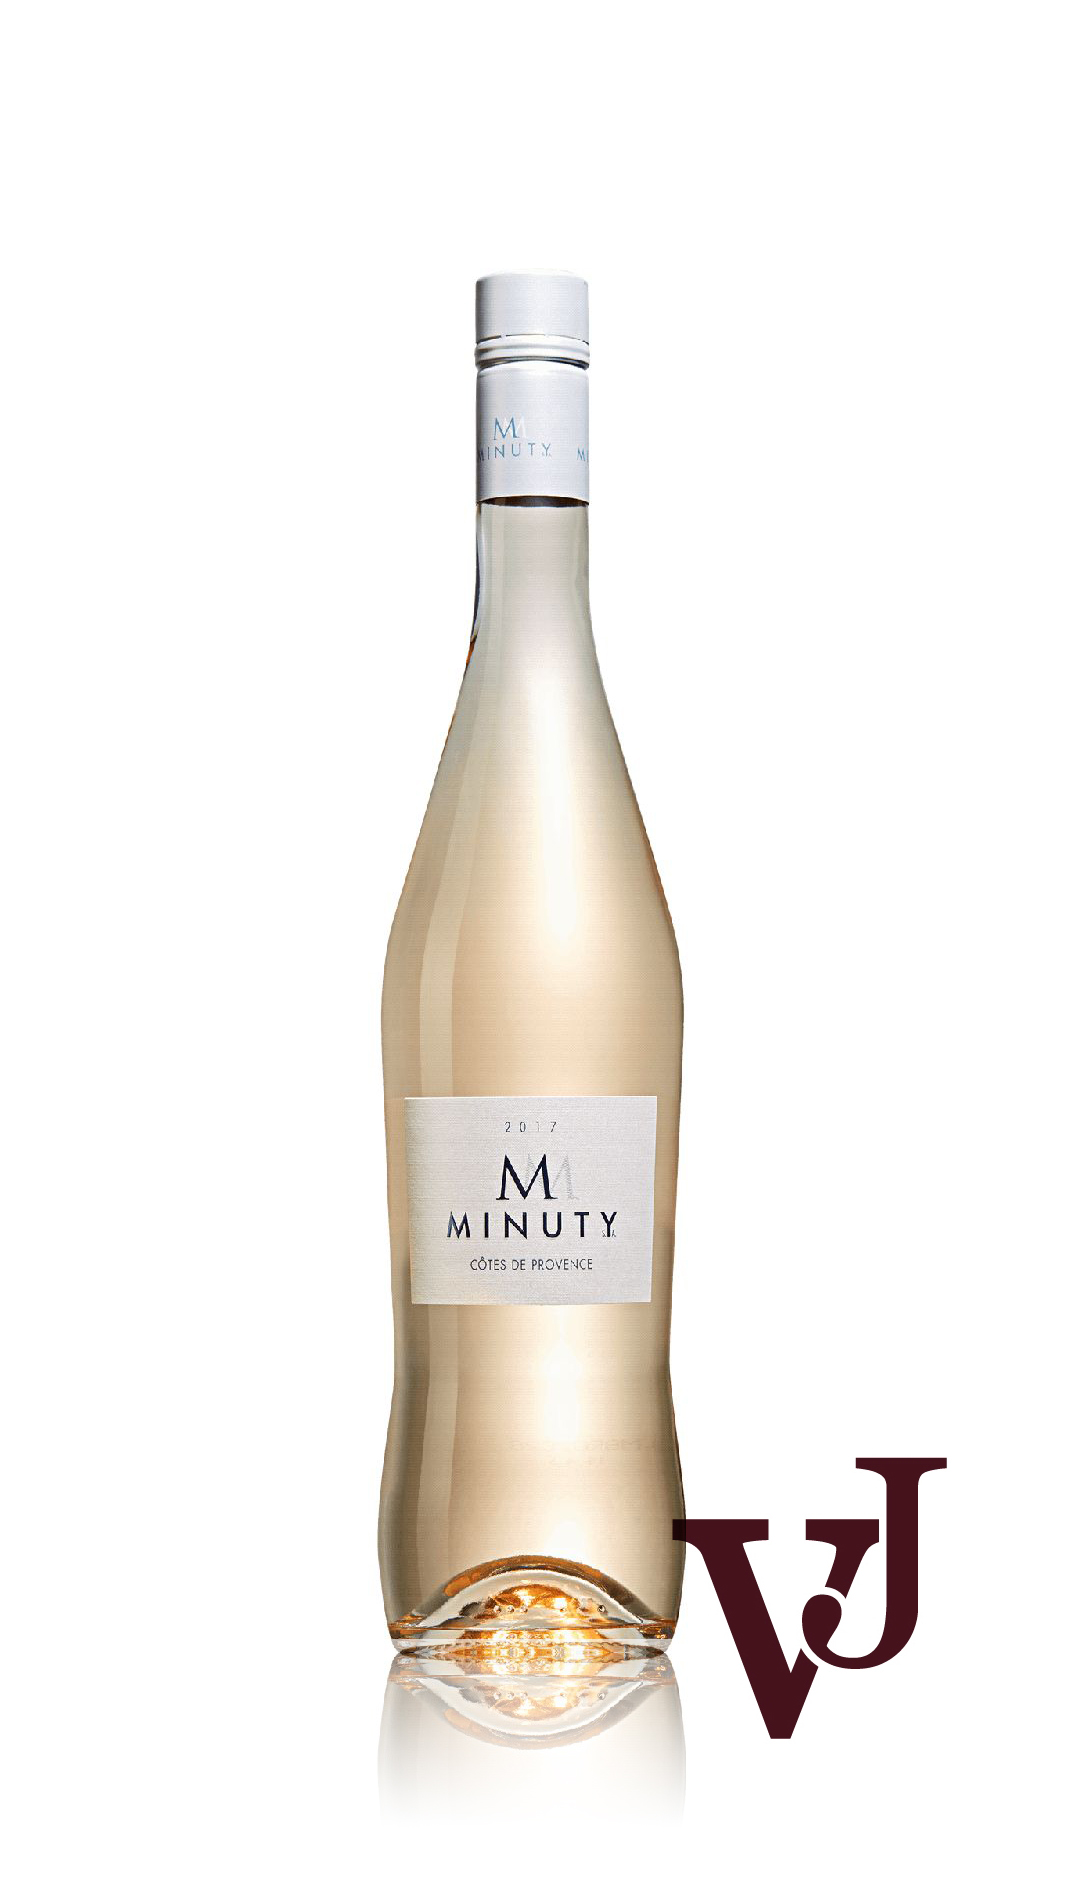 Rosé Vin - M de Minuty Rosé artikel nummer 259001 från producenten Château Minuty från området Frankrike